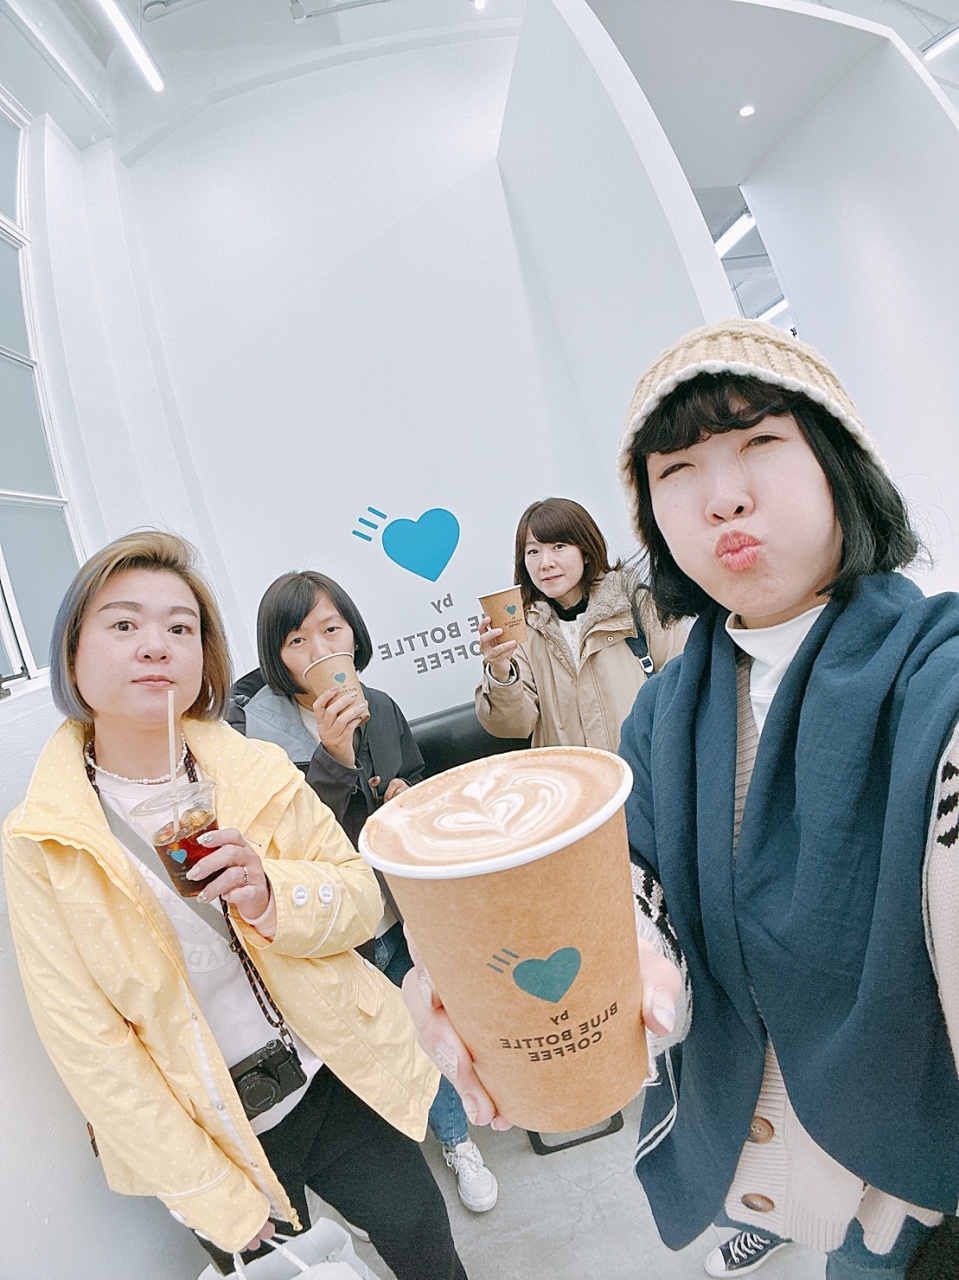 【京都】HUMAN MADE 與 Blue Bottle Coffee 日本潮流品牌聯名愛心藍瓶咖啡 @Maruko與美食有個約會